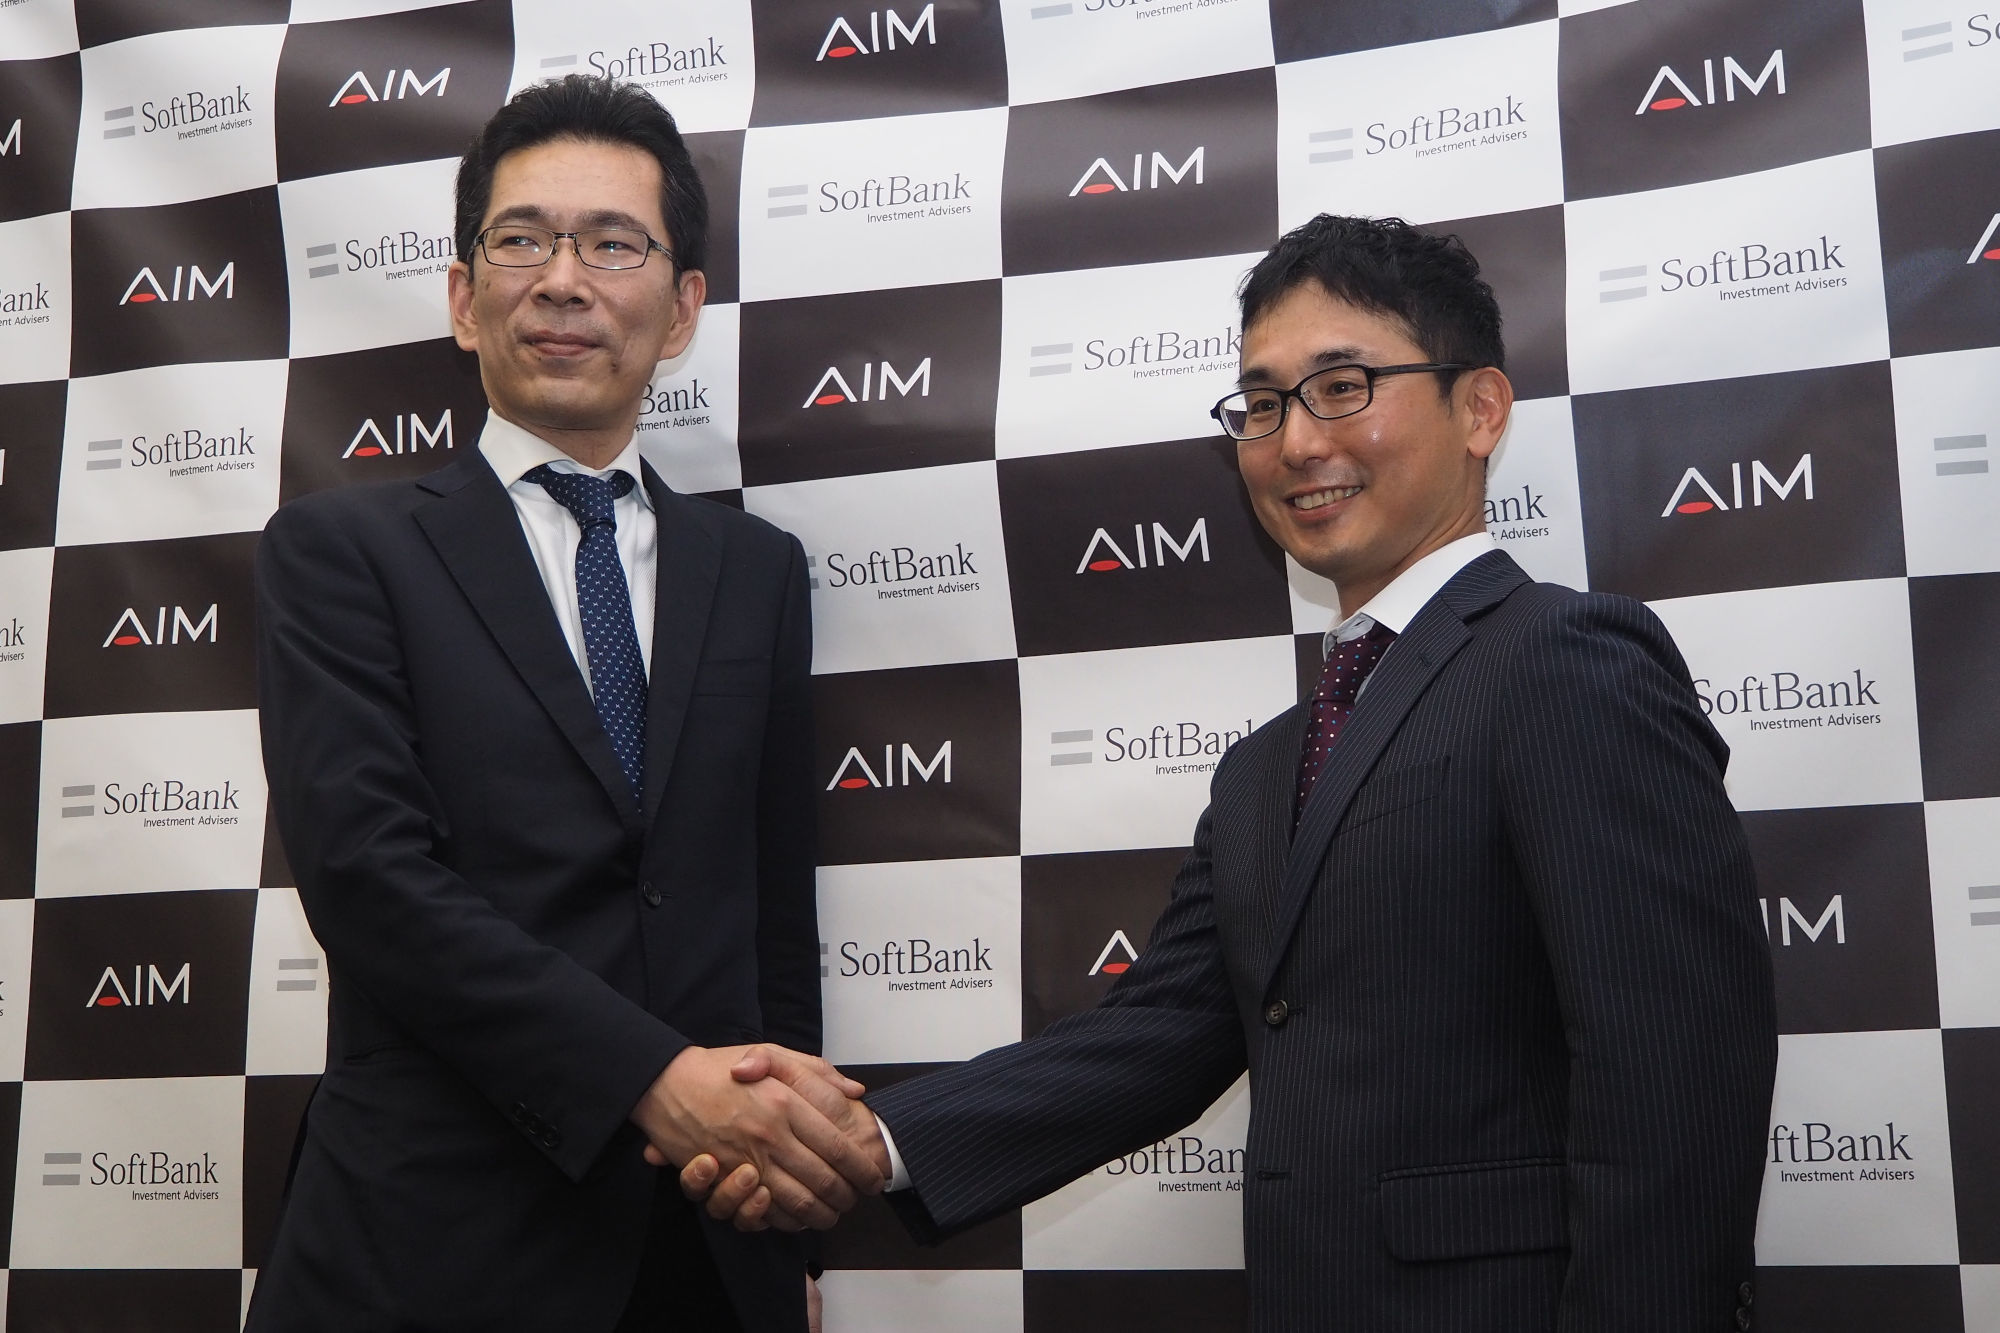 AIメディカルサービス創業者兼代表取締役CEOの多田智裕氏（写真左）と、SB Investment Advisers マネージングパートナーの松井健太郎氏（写真右）